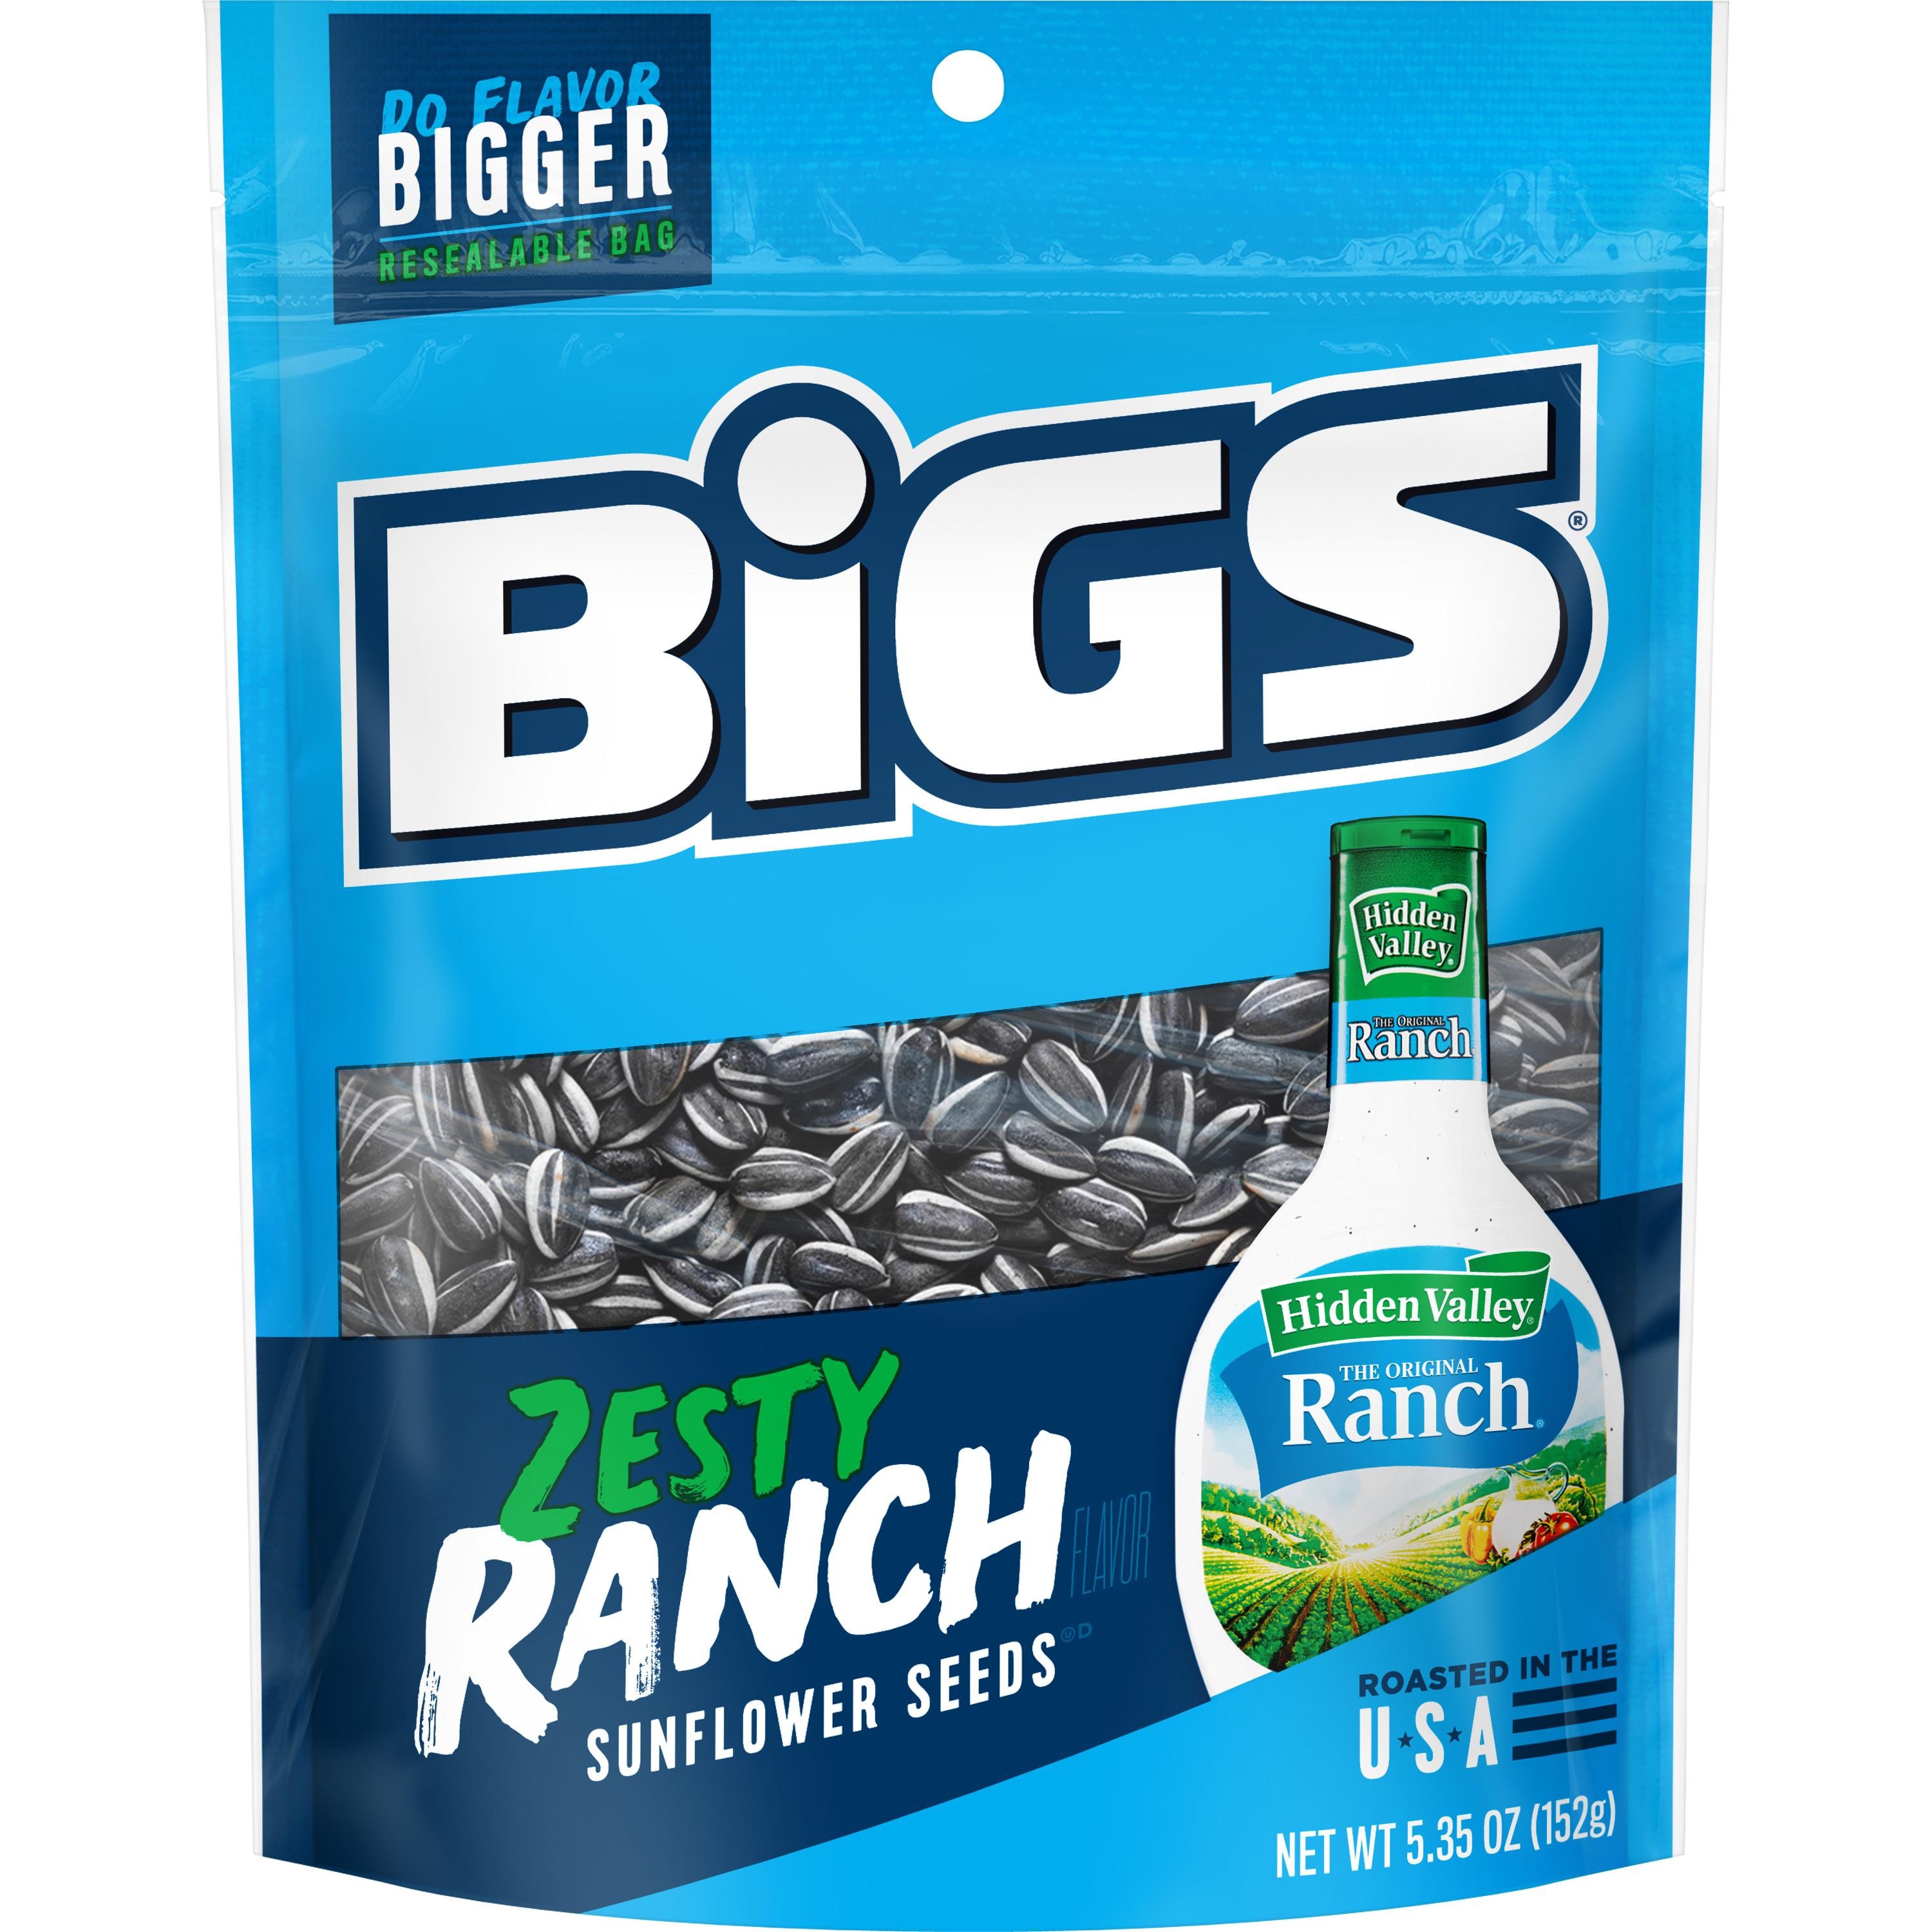 Bigs Ranch Sunflower Seeds